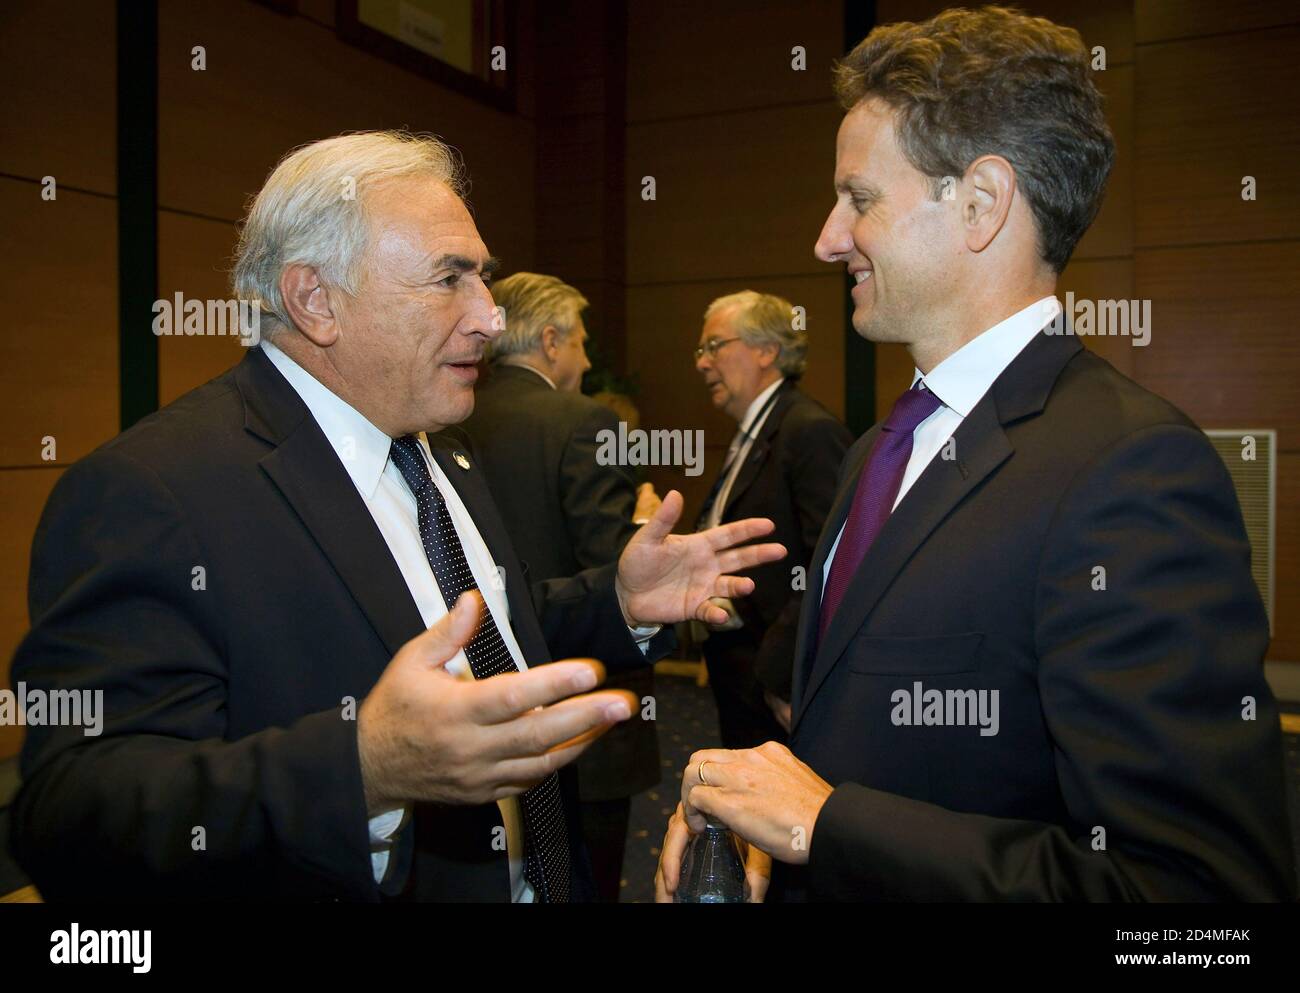 Dominique Strauss-Kahn (L), amministratore delegato del FMI, parla con il Segretario del Tesoro americano Tim Geithner (R) prima dell'inizio dell'incontro del G7 presso il Centro Congressi di Istanbul, circa 3 ottobre 2009 Foto Stock